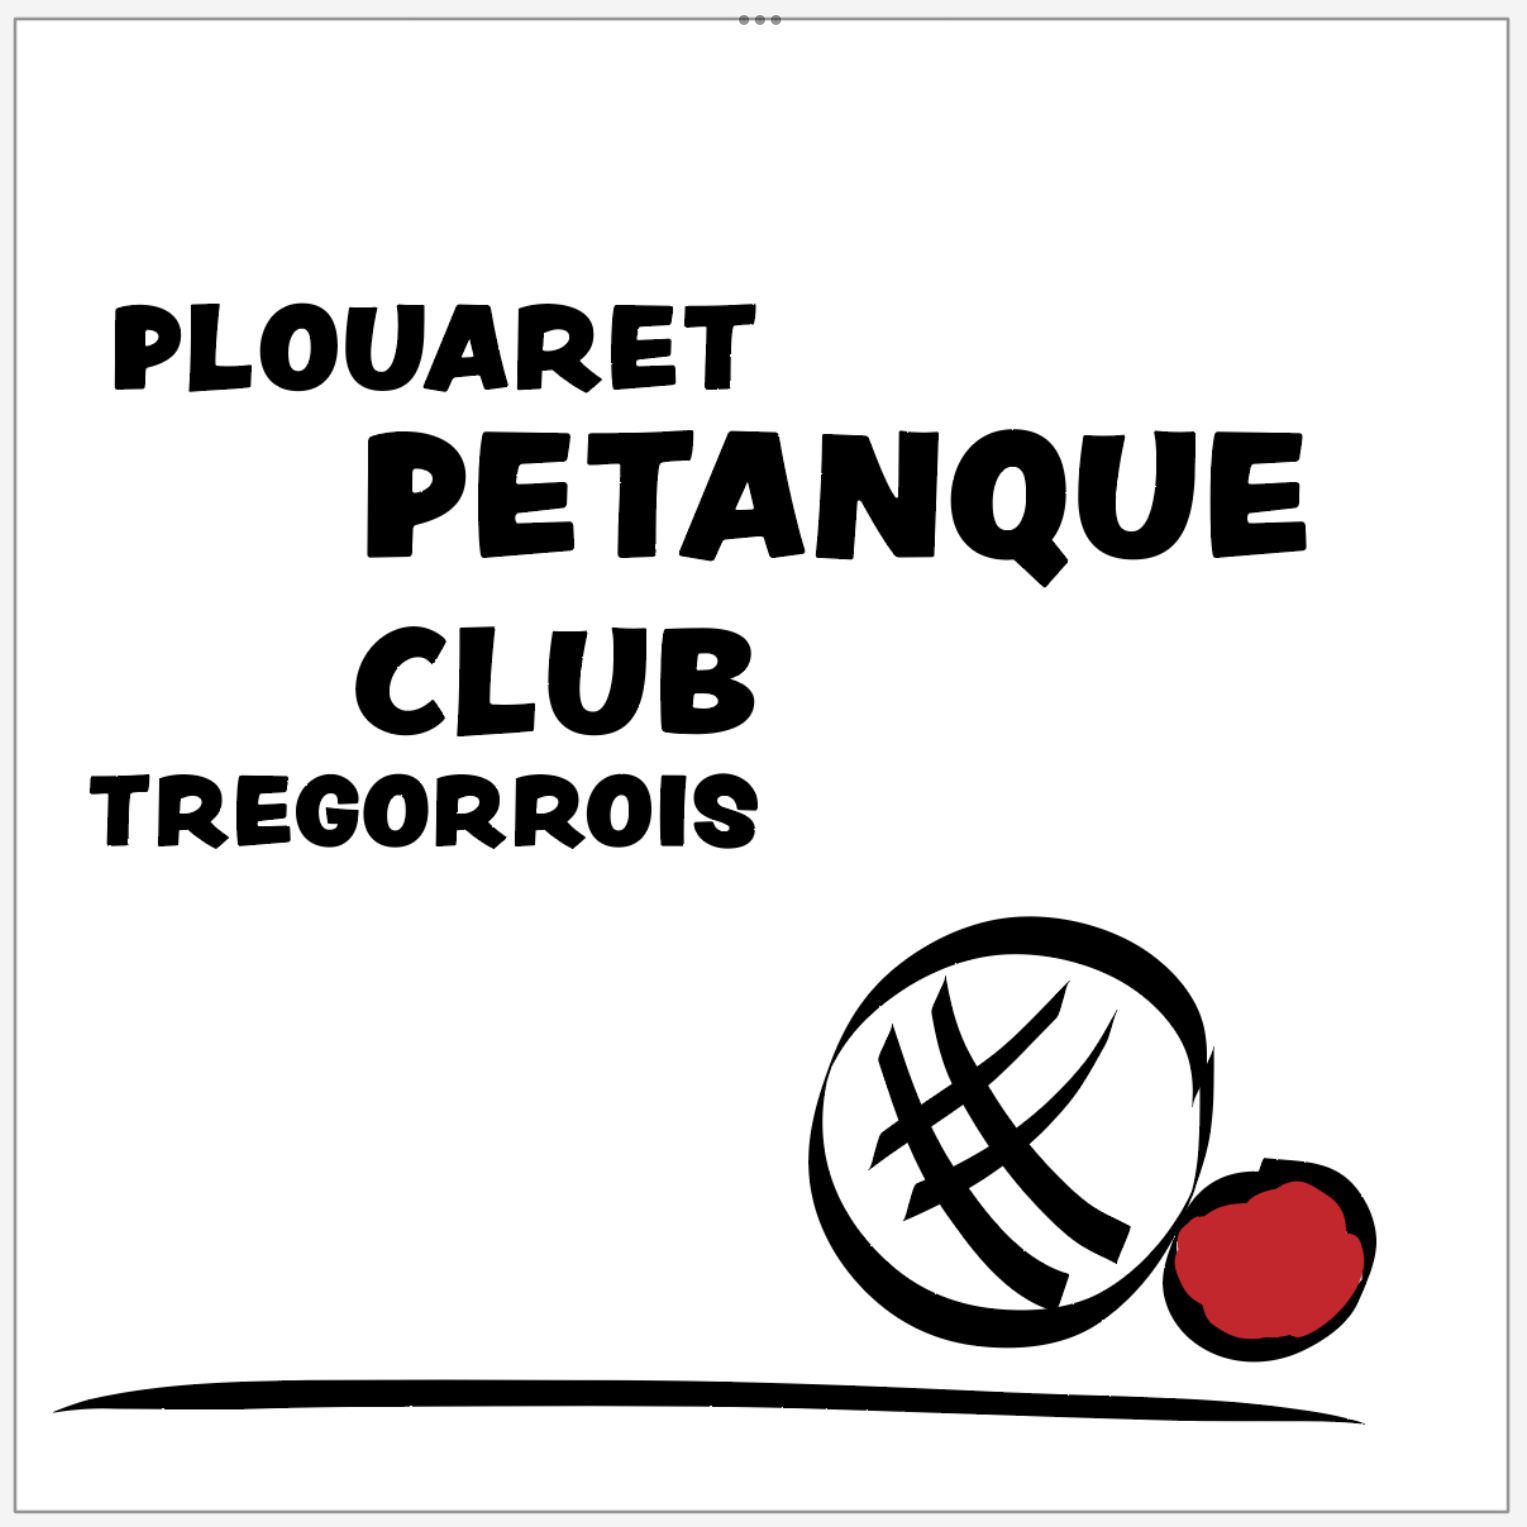 Logo du club de pétanque Plouaret pétanque club tregorrois - PPCT - club à Plouaret - 22420